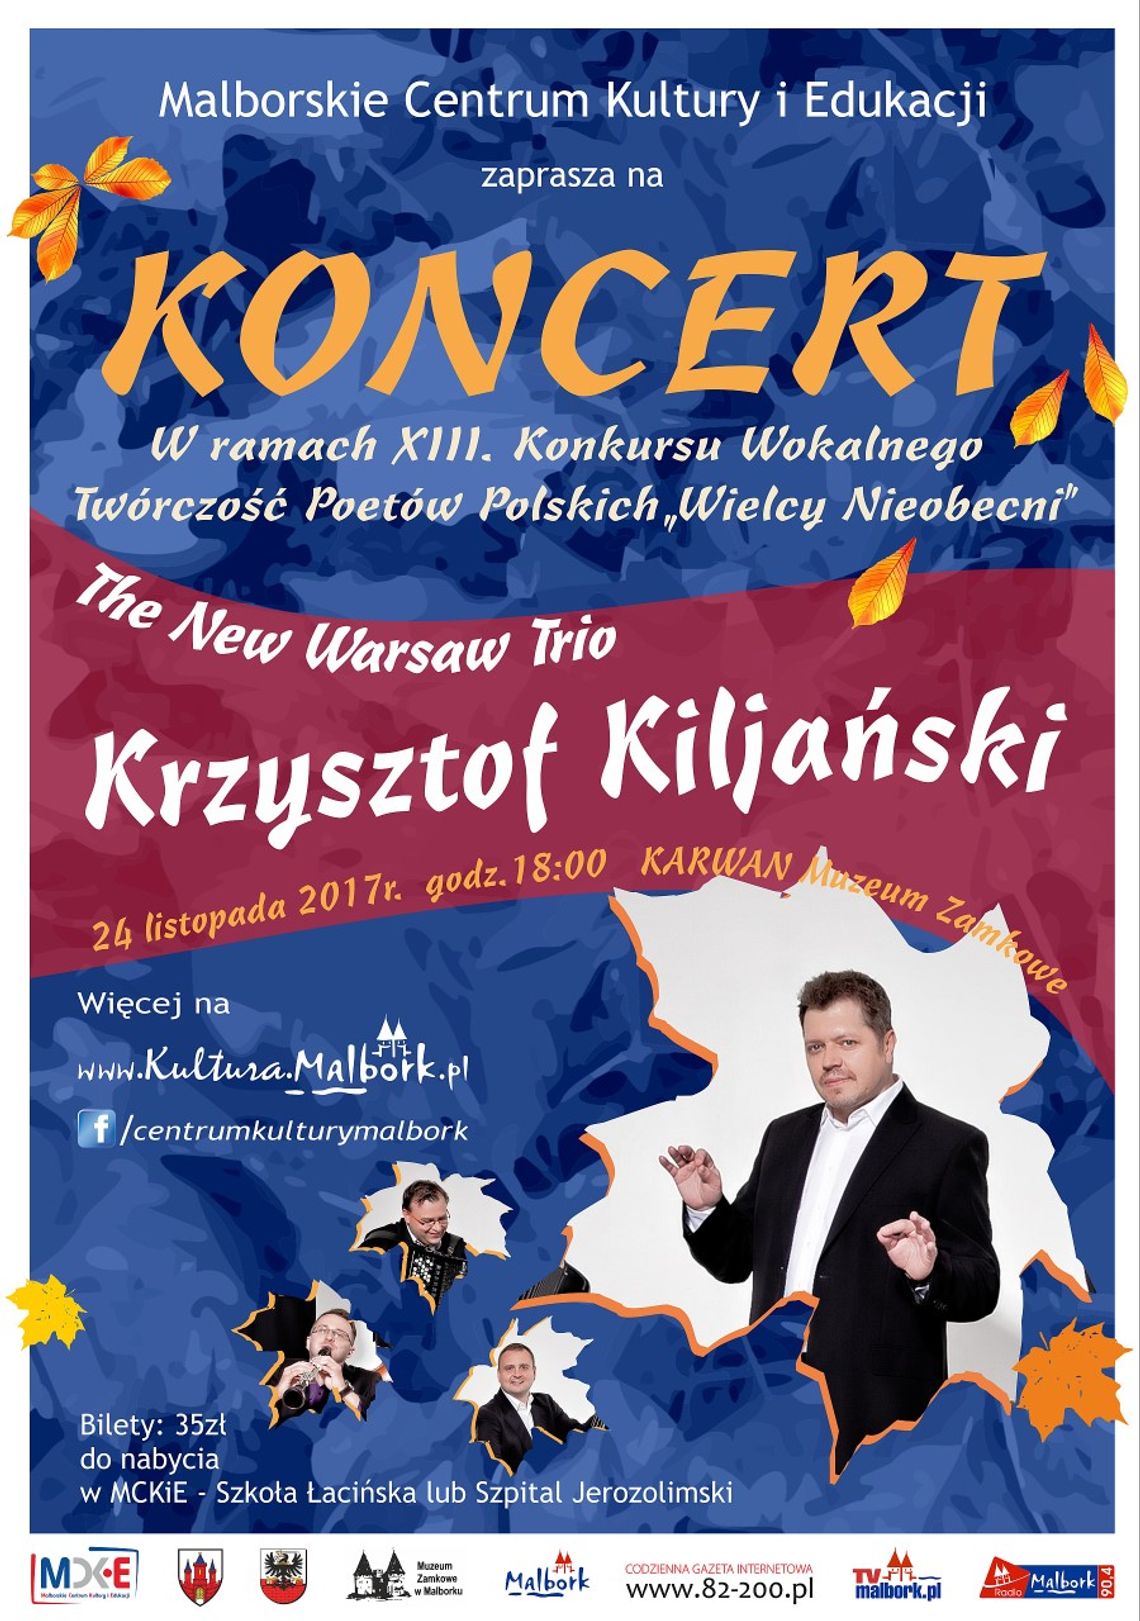 The New Warsaw Trio - Krzysztof Kiljański.